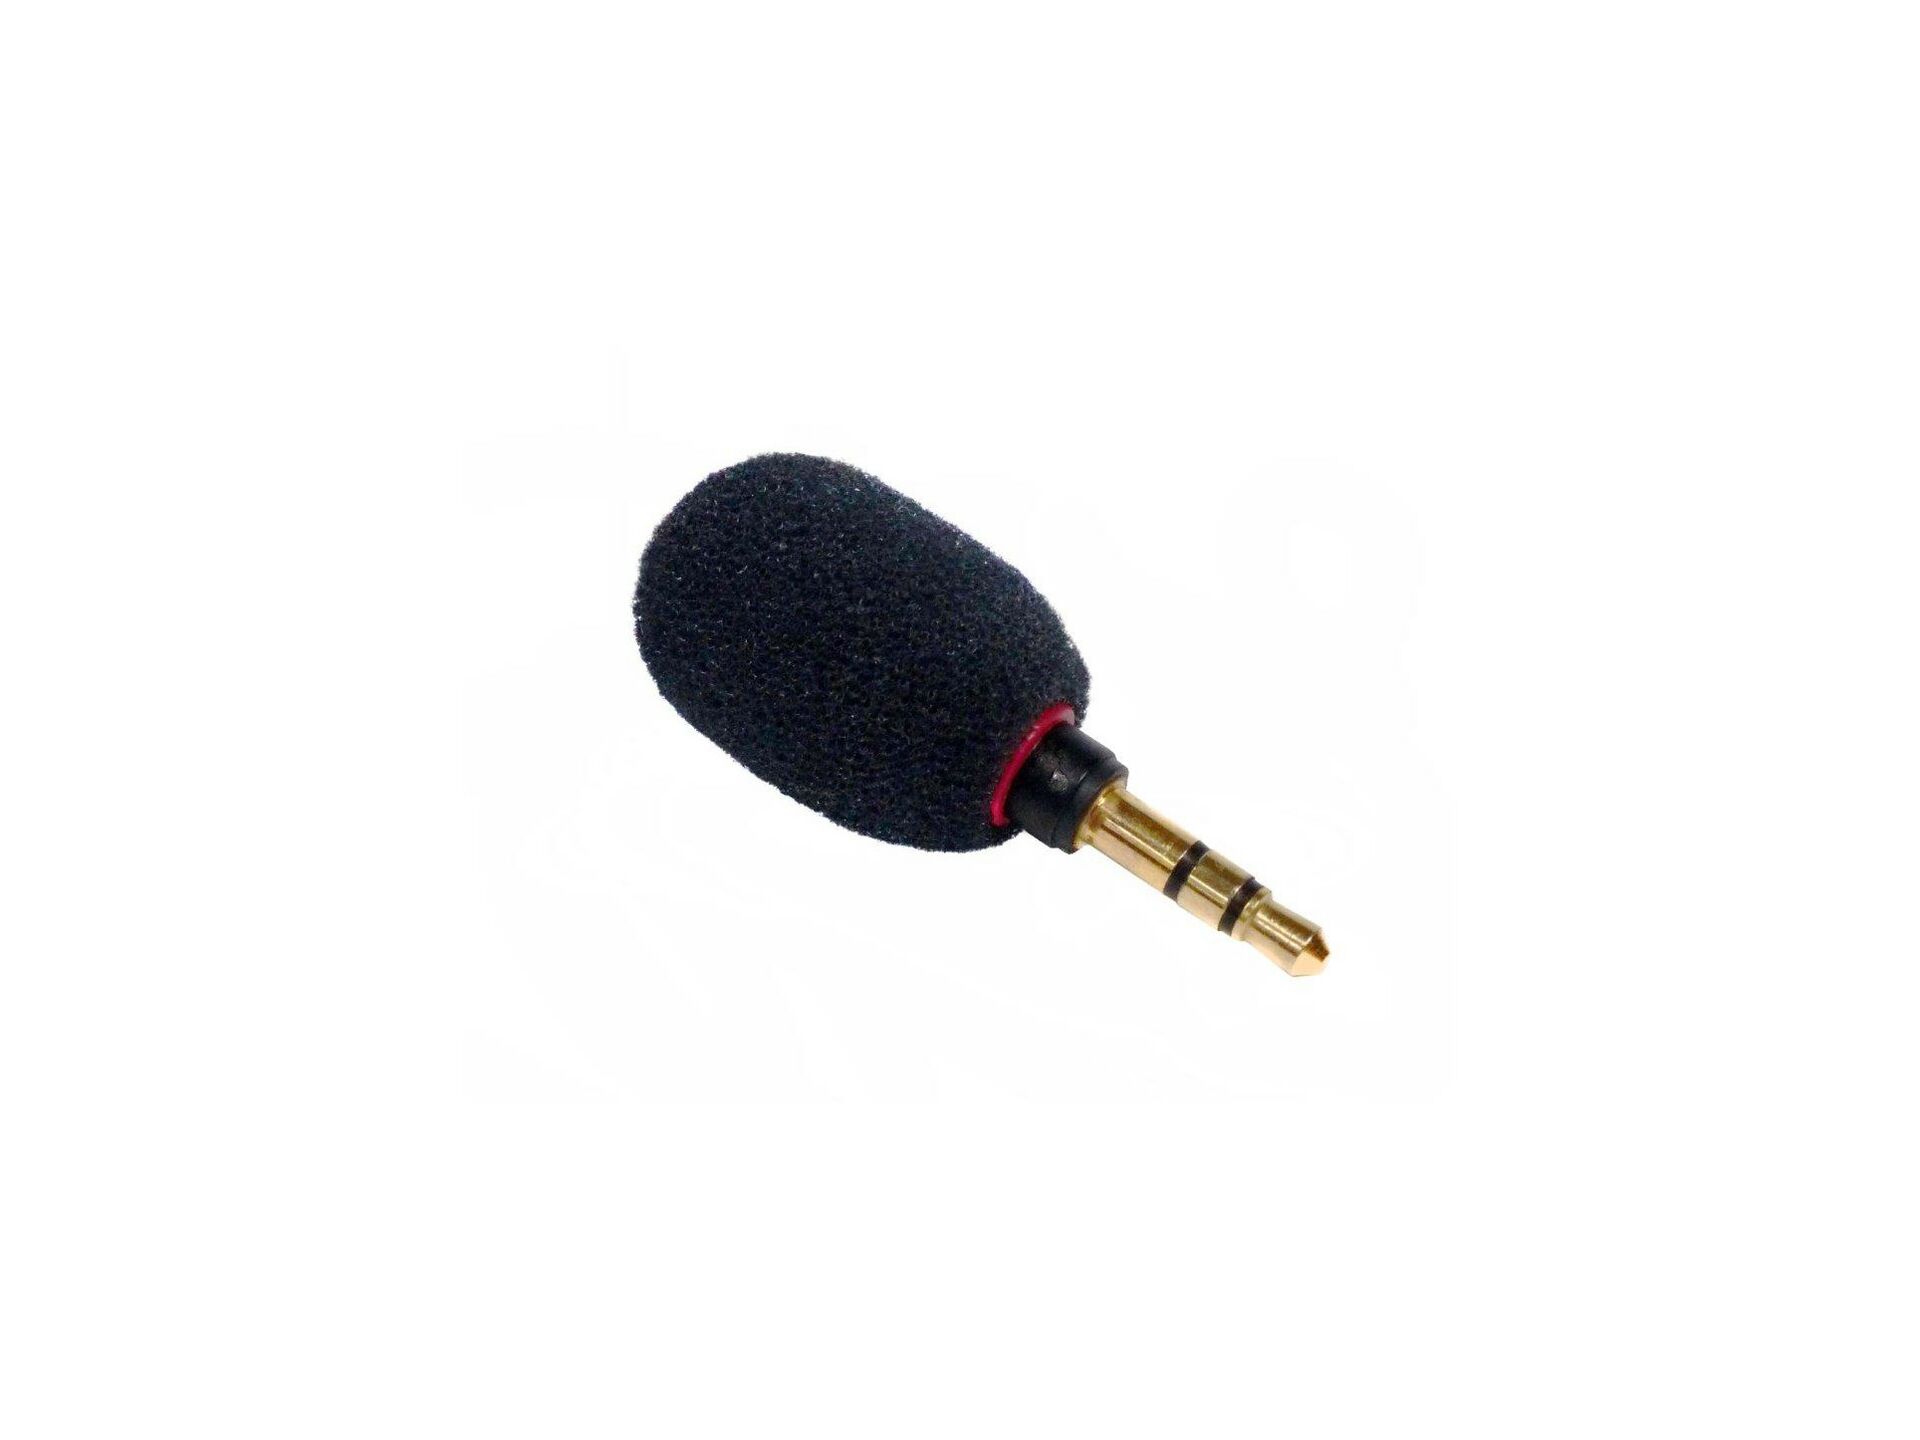 dcrf-tx1-pm-microphone-bonnette-rf.jpg